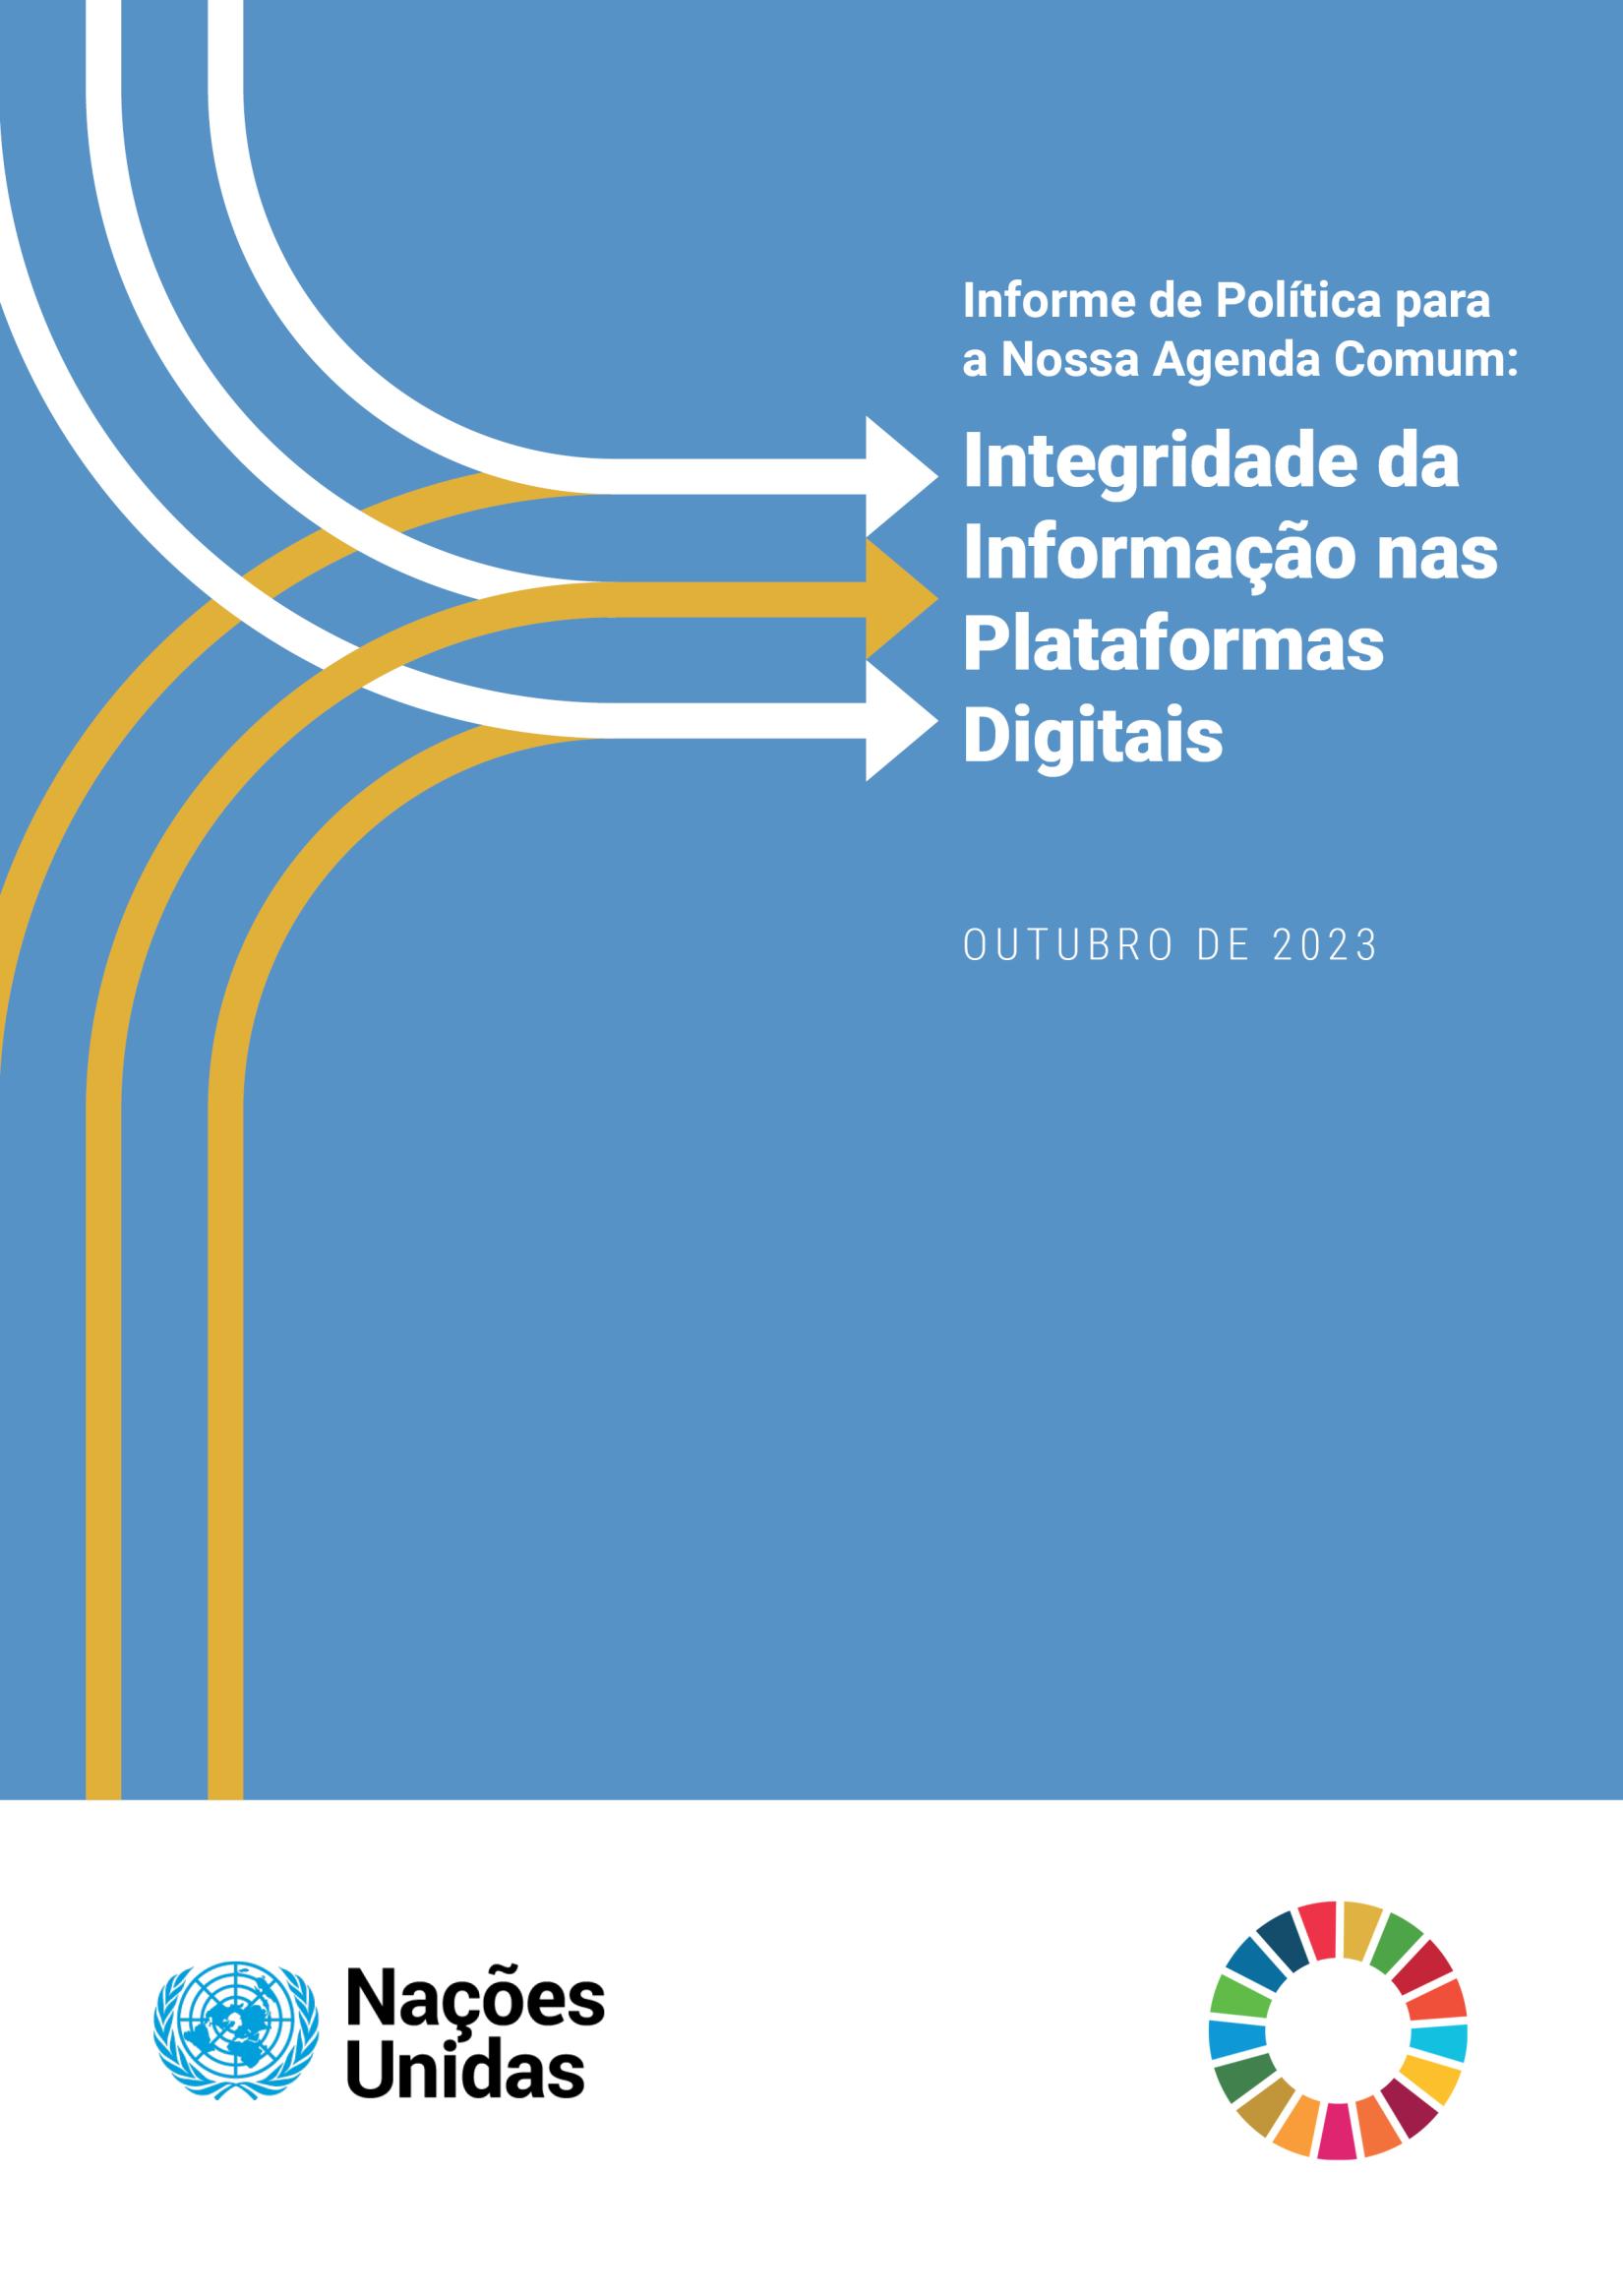 Integridade da Informação nas Plataformas Digitais: Informe do Secretário-Geral da ONU